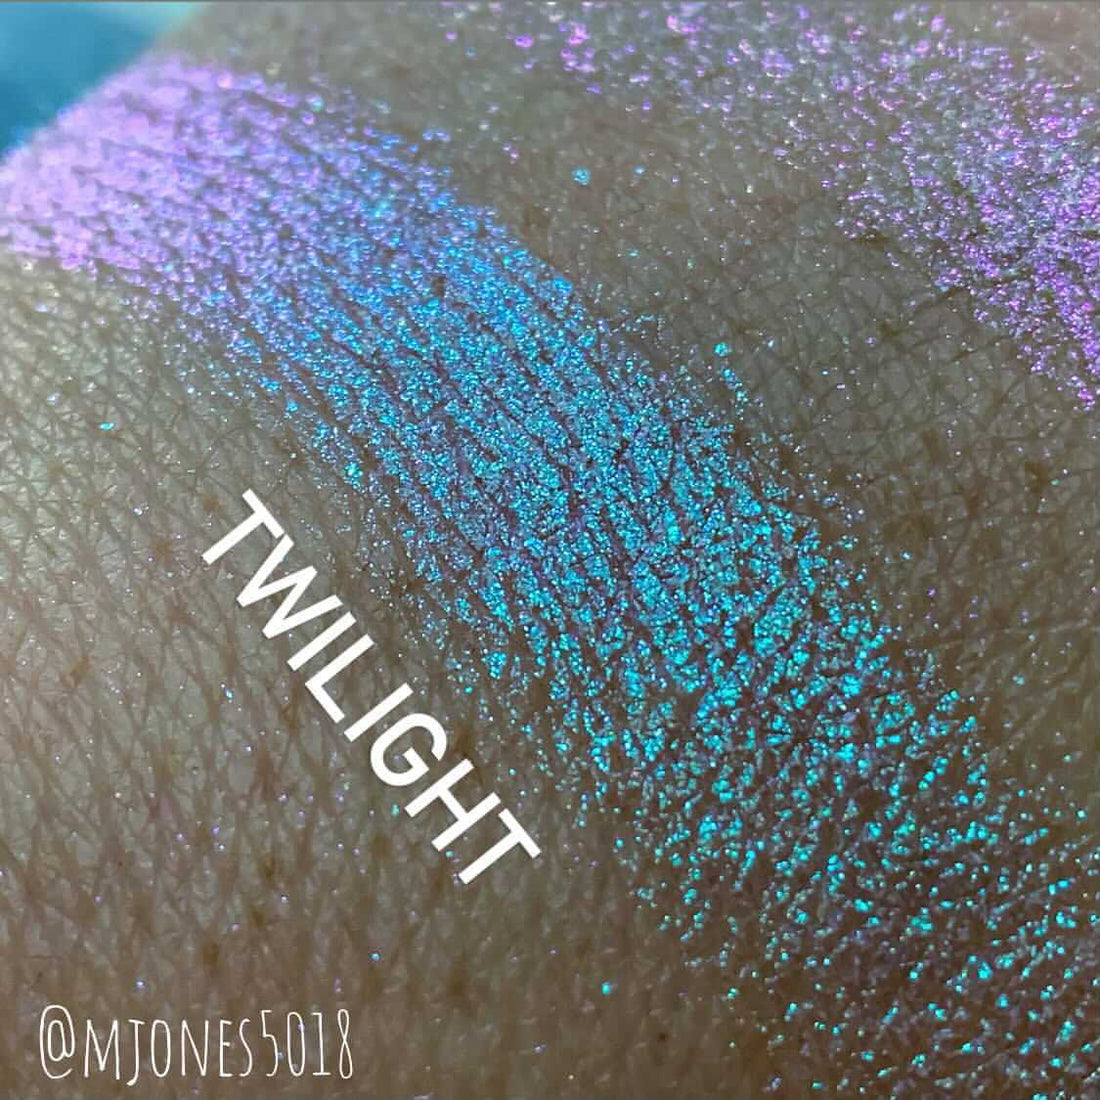 Twilight [Primavera Crystal]